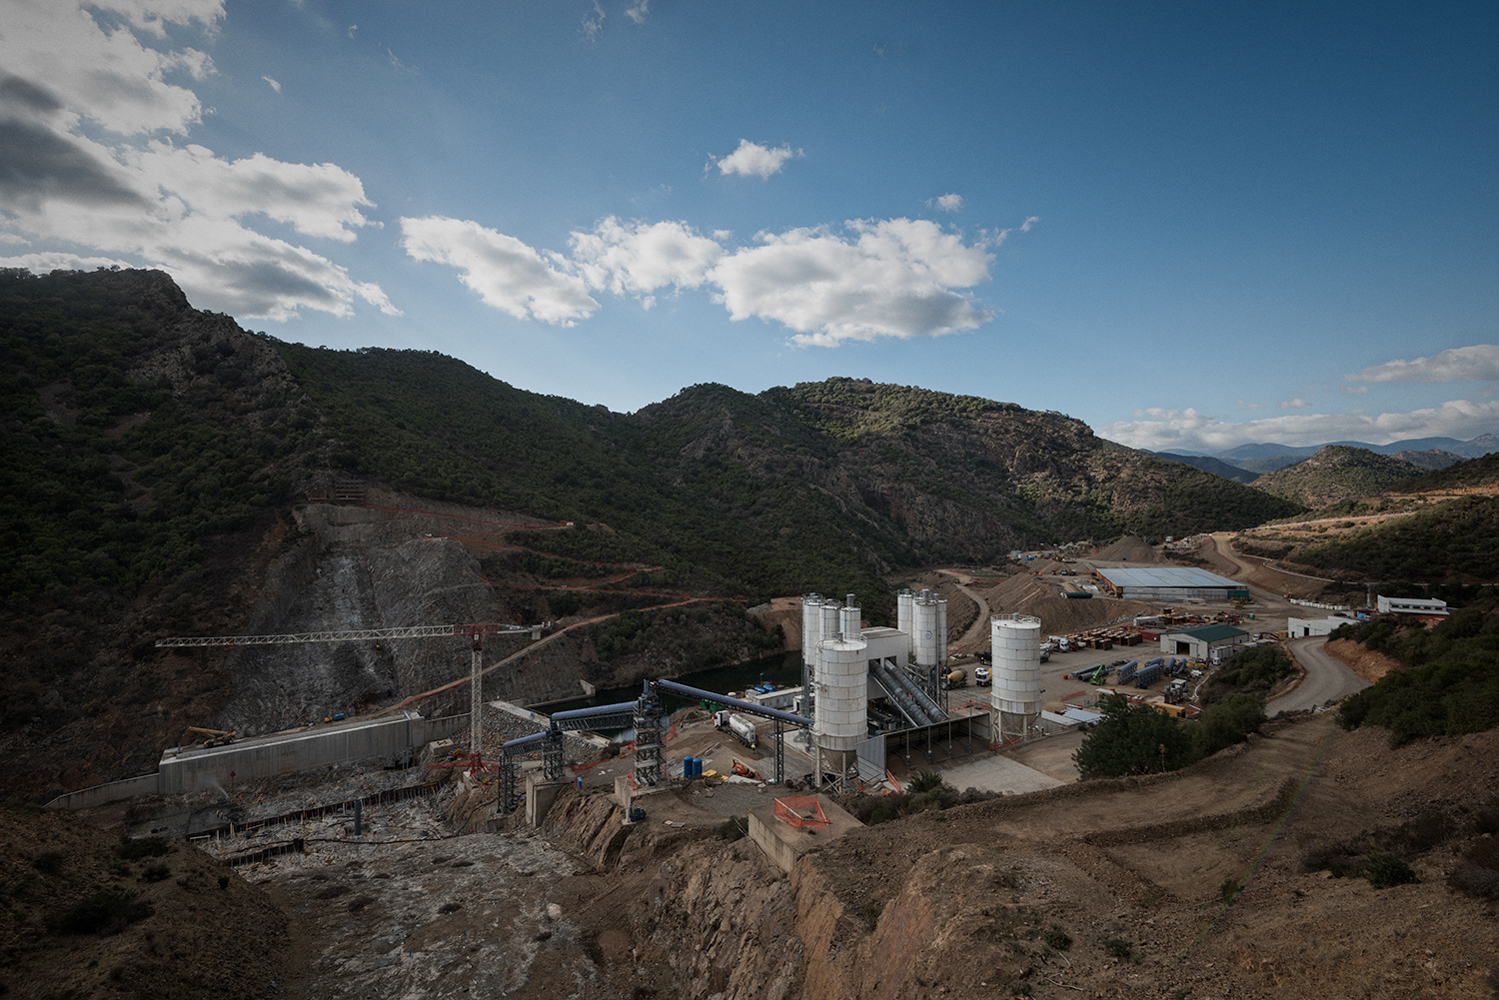  La diga di Monte Nieddu – Is Canargius, in territorio Sa Stria, progettata nel 1960, i cui lavori dovrebbero concludersi nel 2020, con i suoi 35 milioni di metri cubi d’acqua avrebbe garantito uno sviluppo complementare a quello industriale.  Sarroc